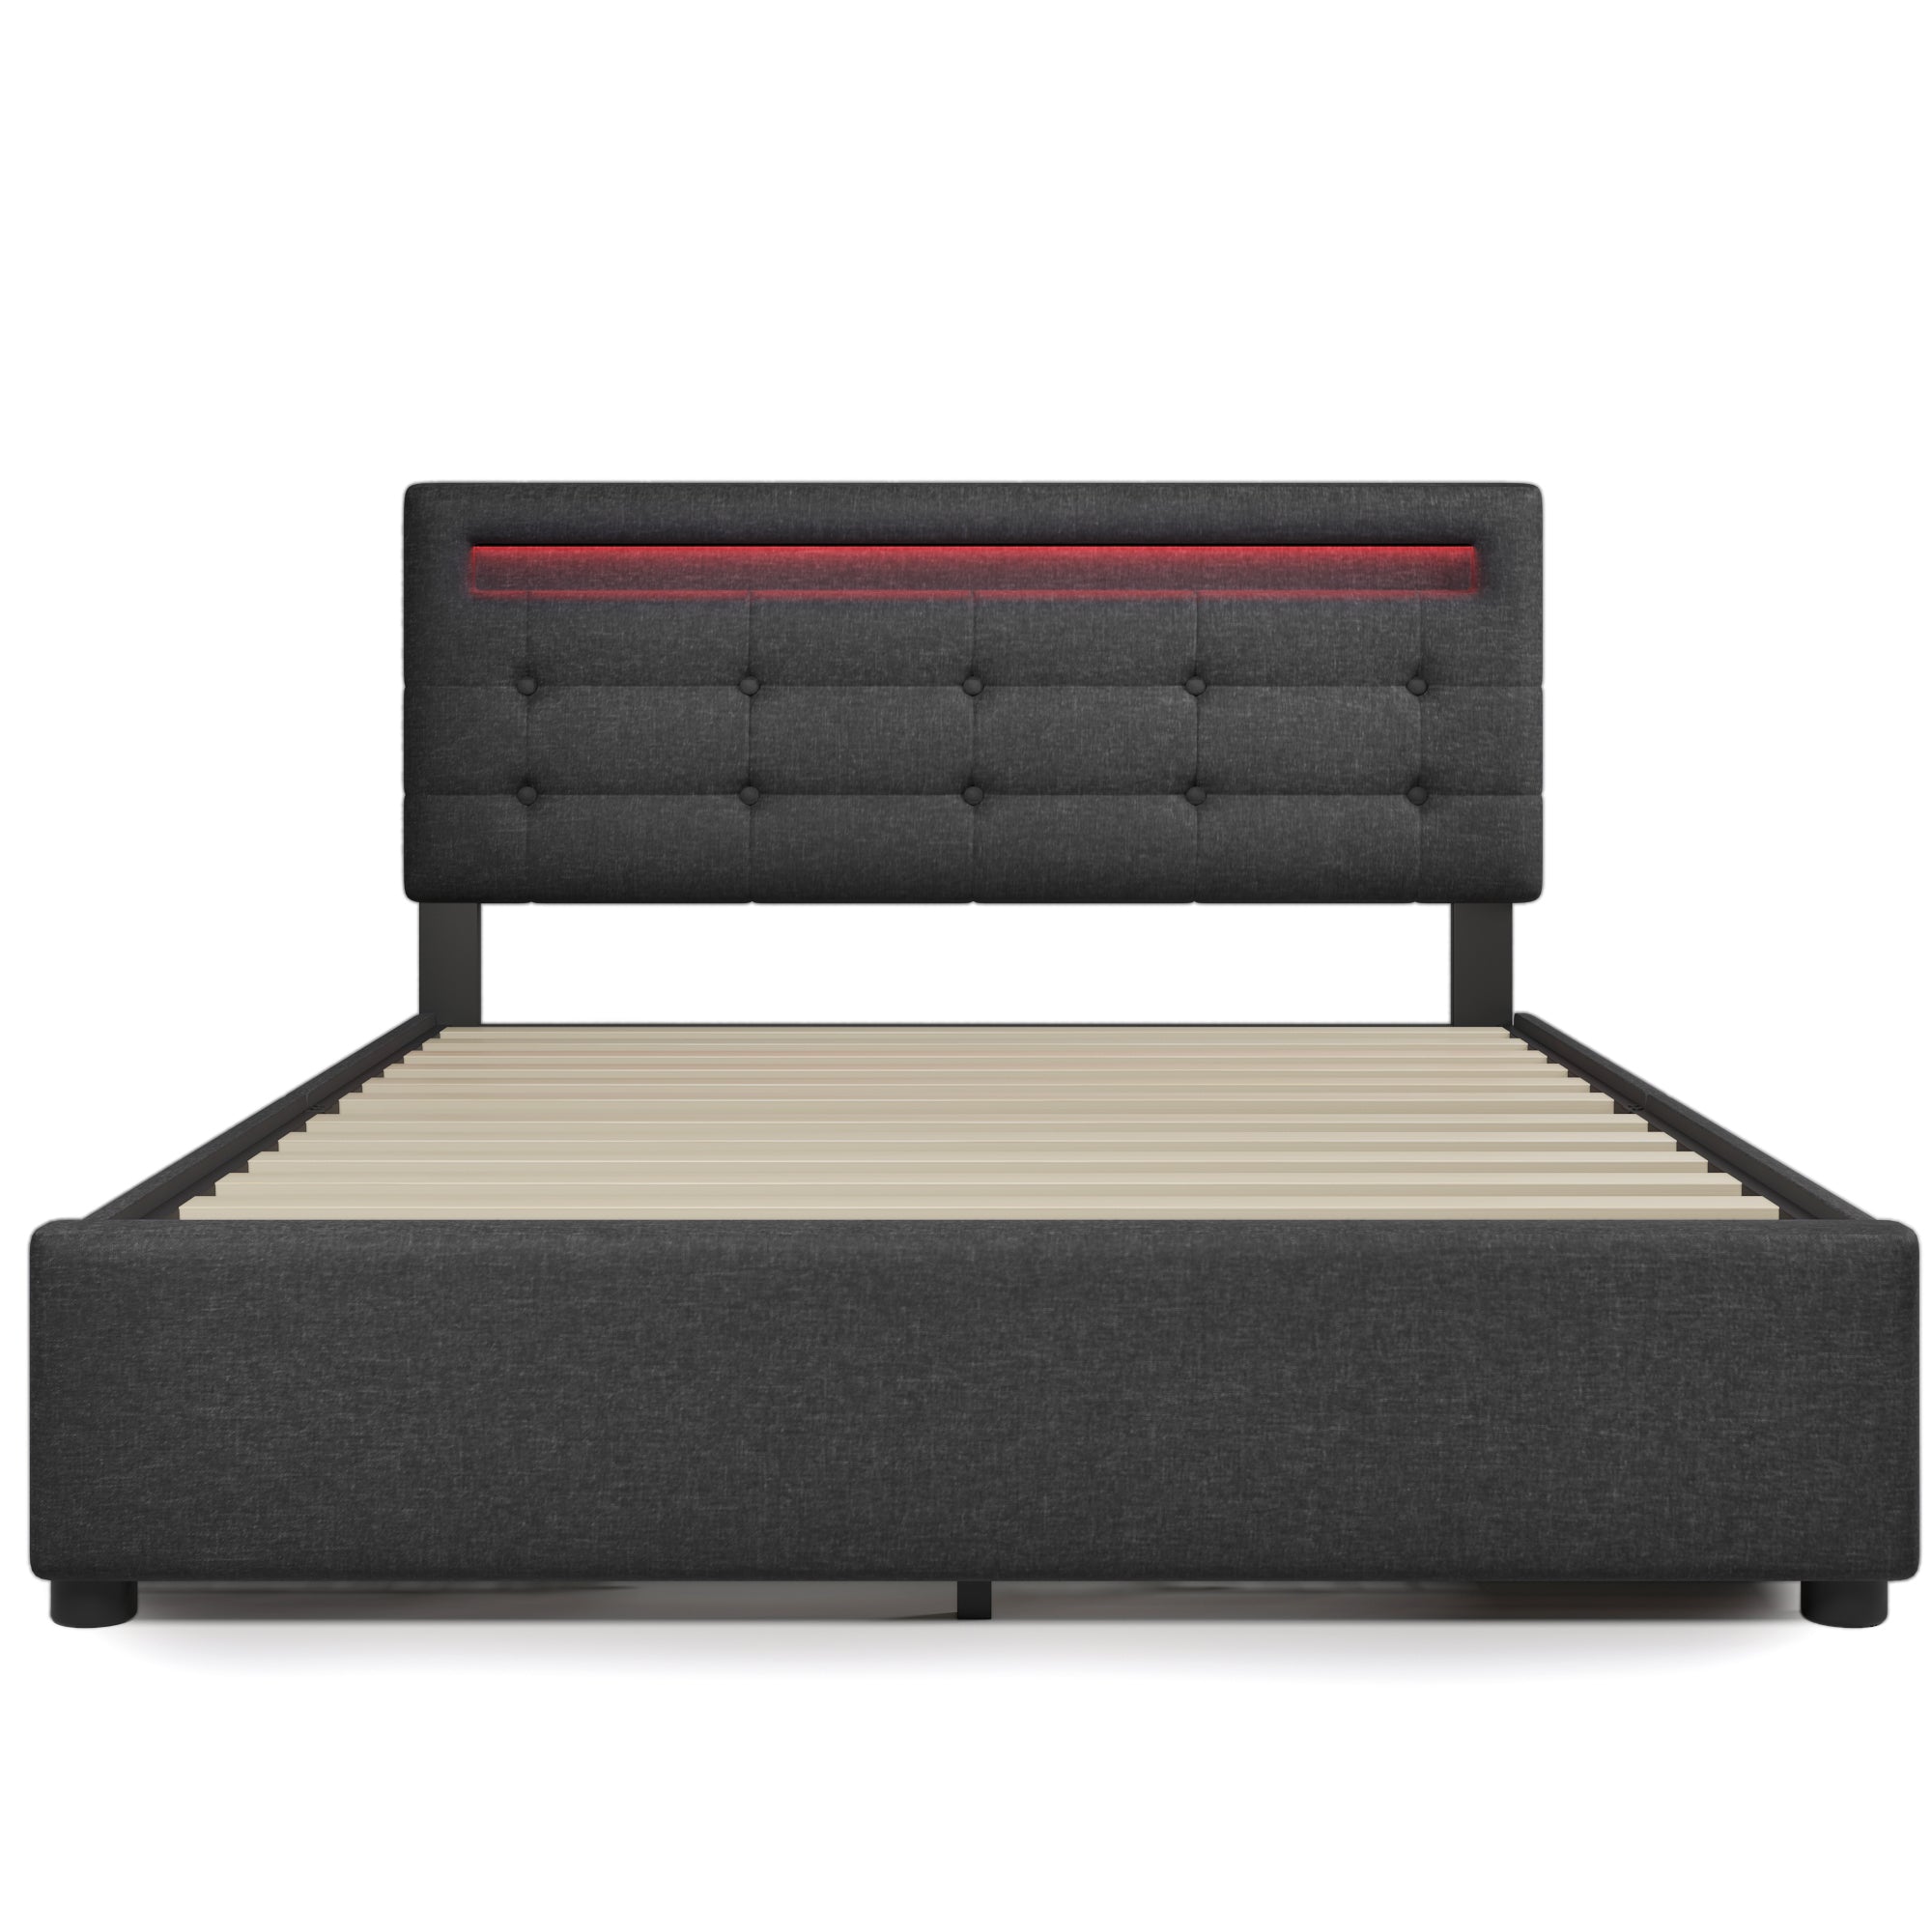 Bellemave® Upholstered Platform Bed with 4 Storage Drawers and LED Lights & Adjustable Headboard Bellemave®